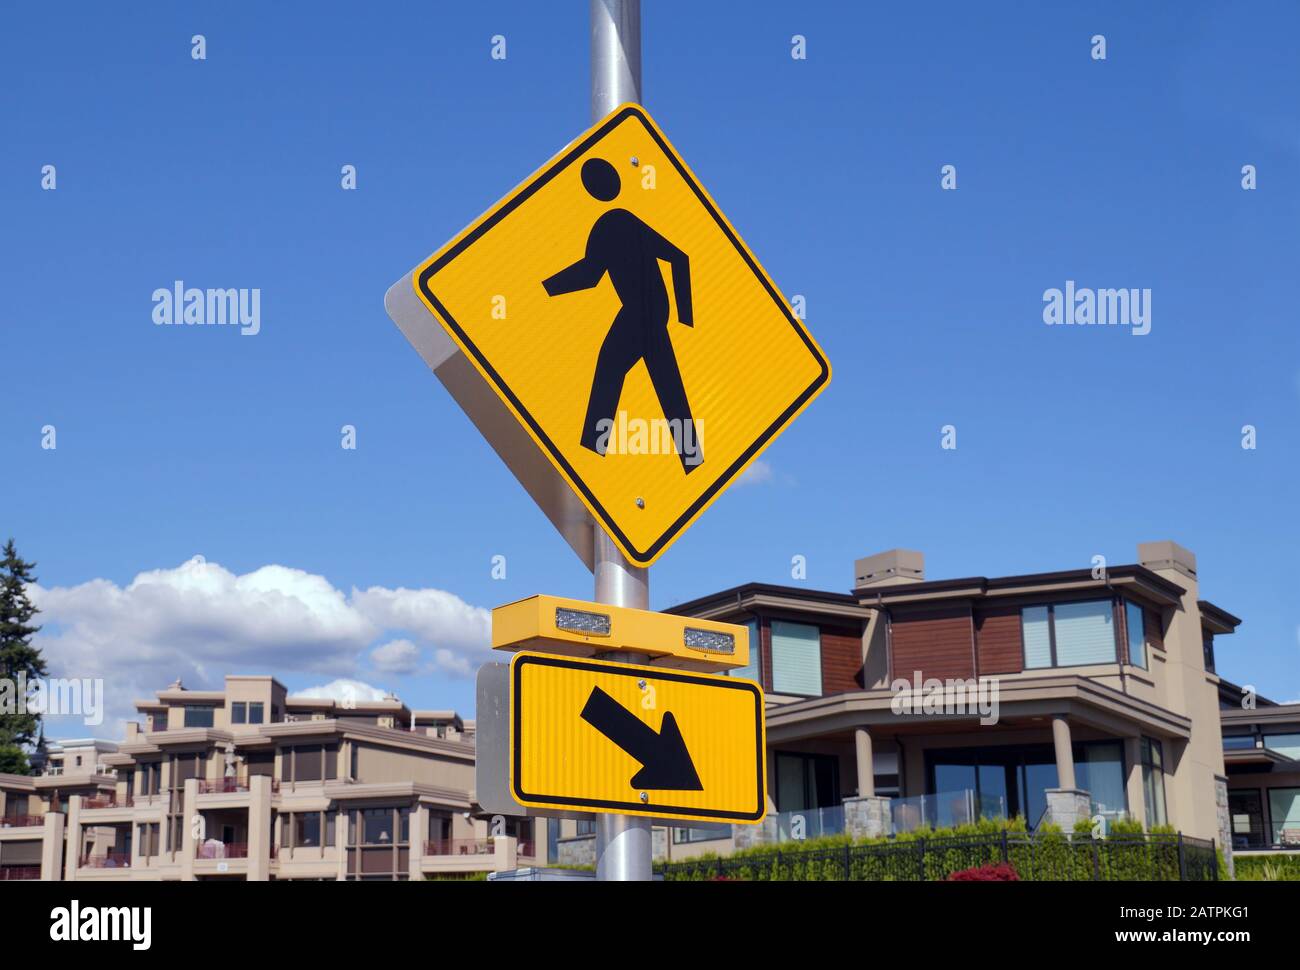 Fußgängerübergang. Kennzeichnung in Form einer Ampel und eines Straßenschildes. Stockfoto